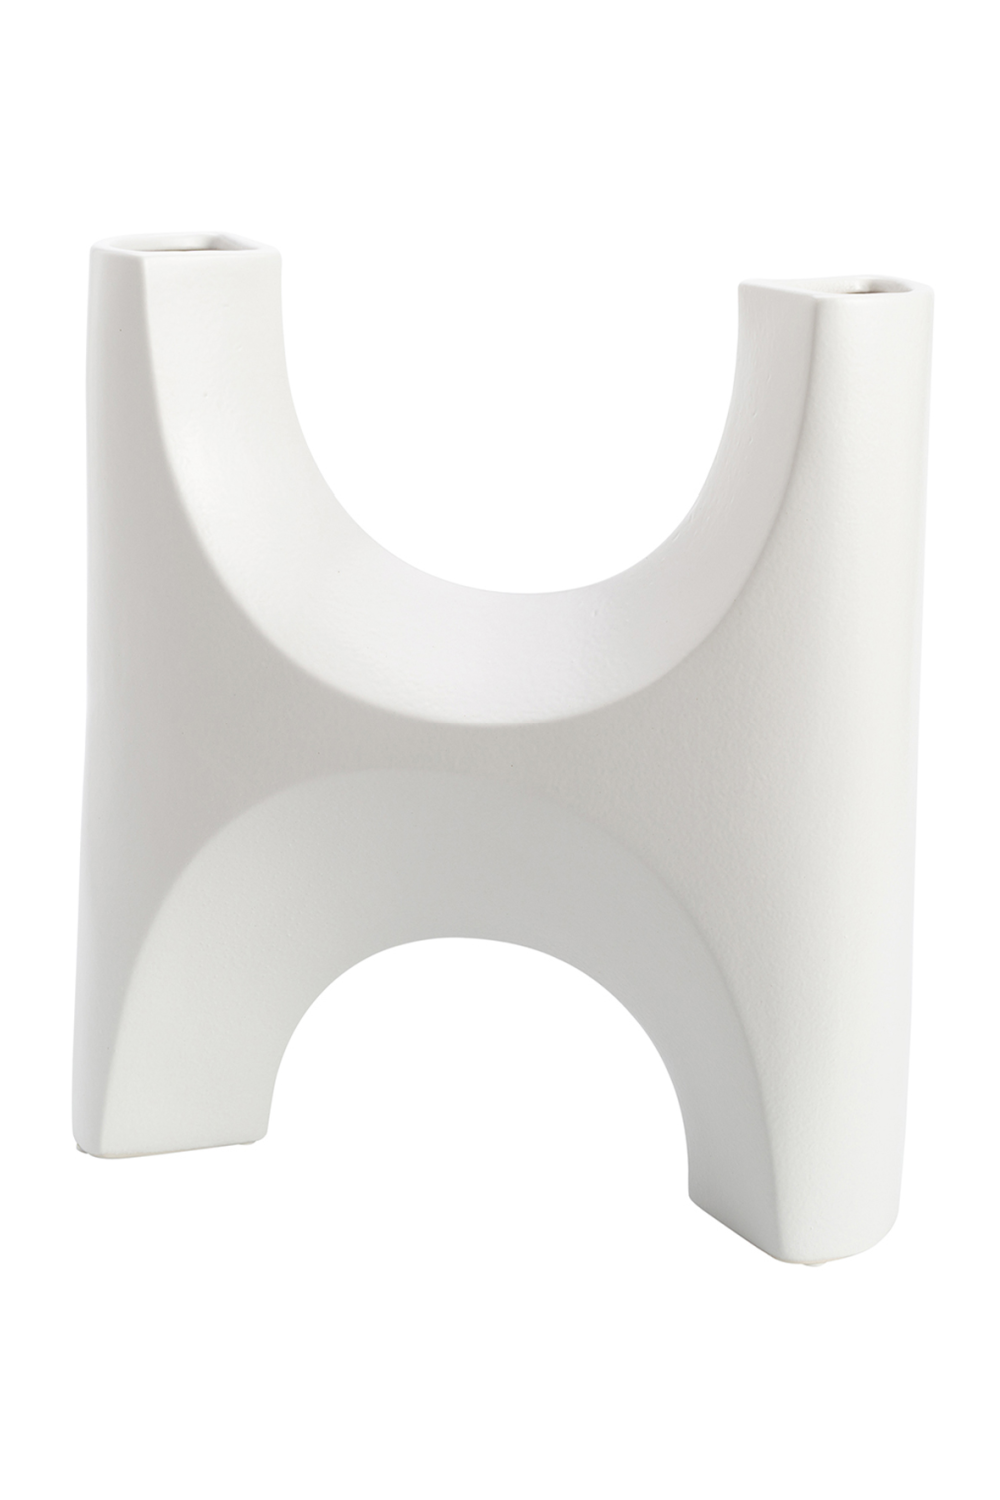 Hand-Glazed White Ceramic Vase | Liang & Eimil Savier | OROA.com